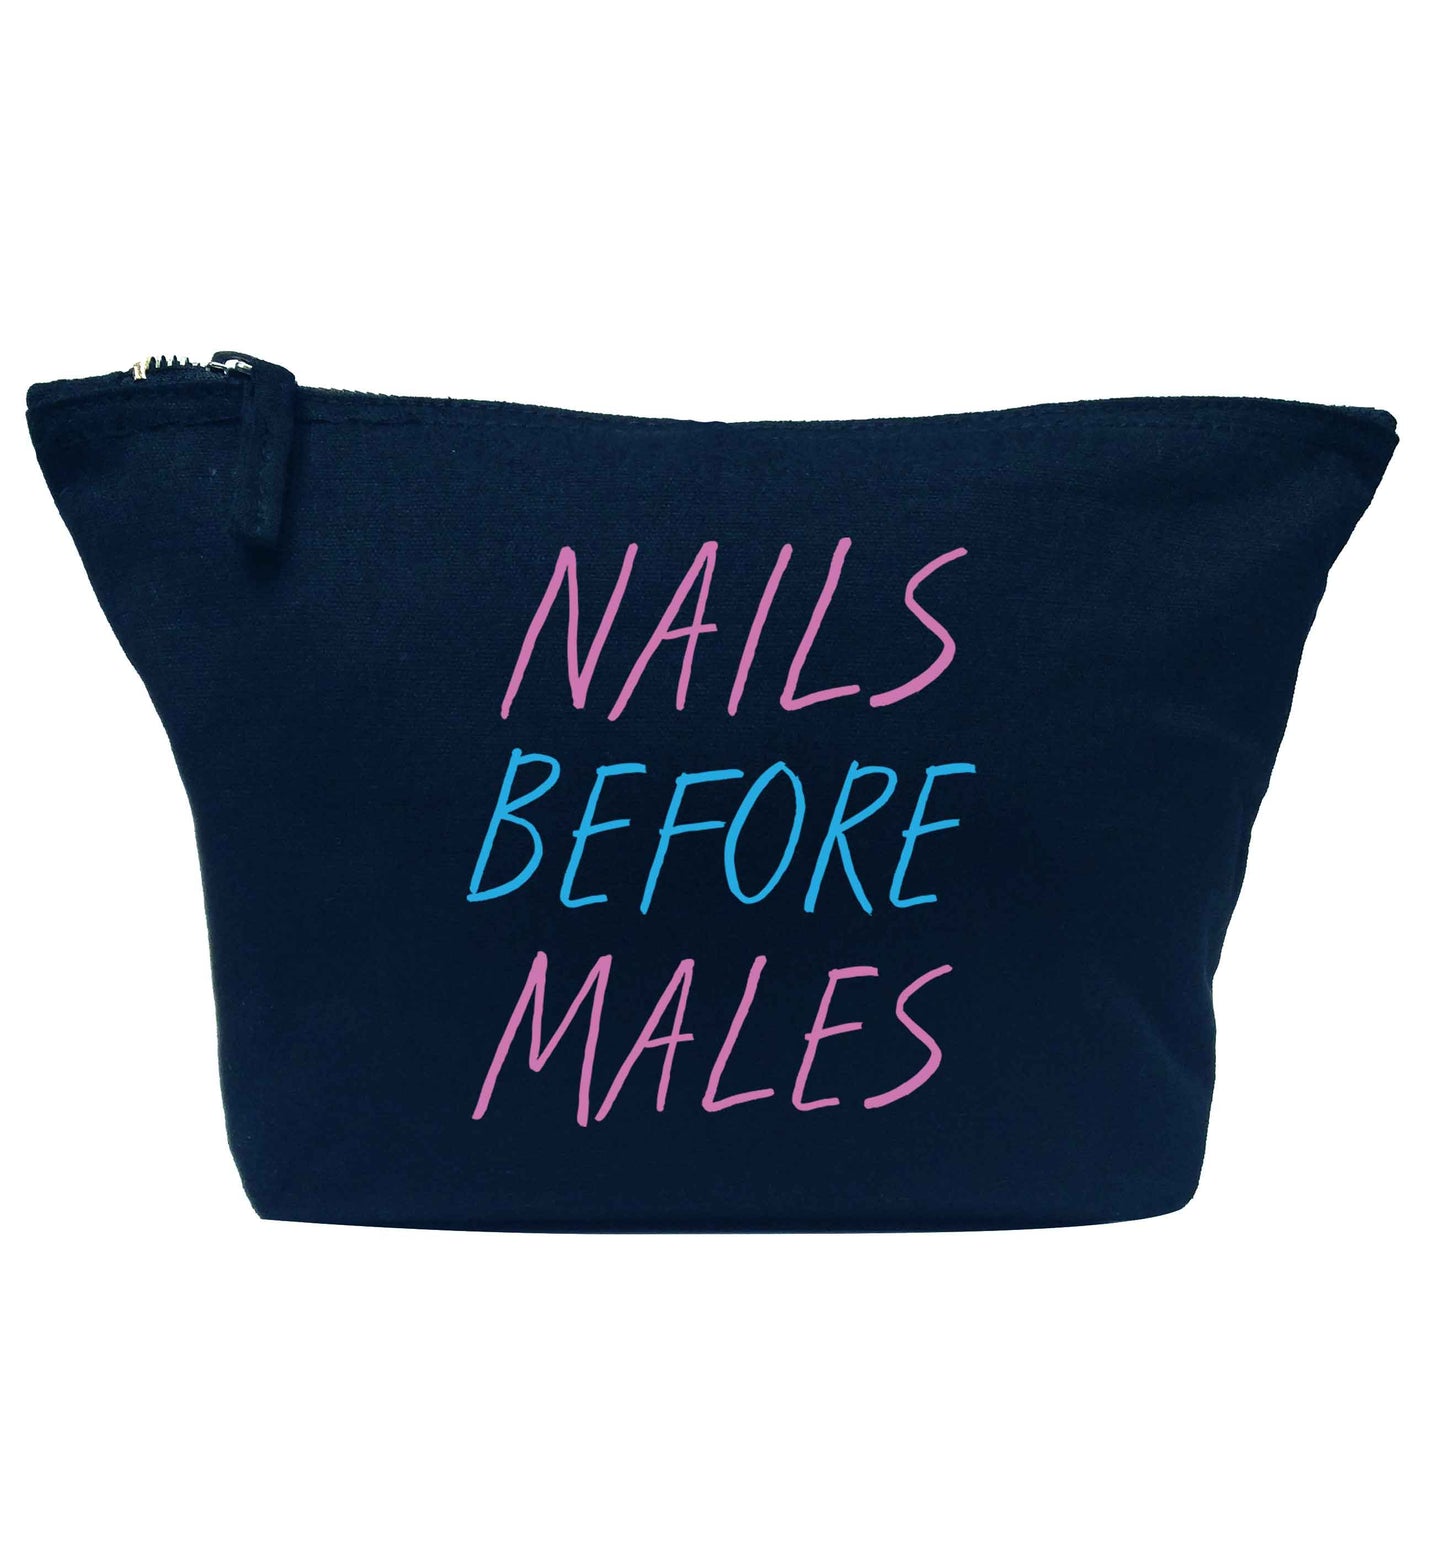 Nails before males navy makeup bag